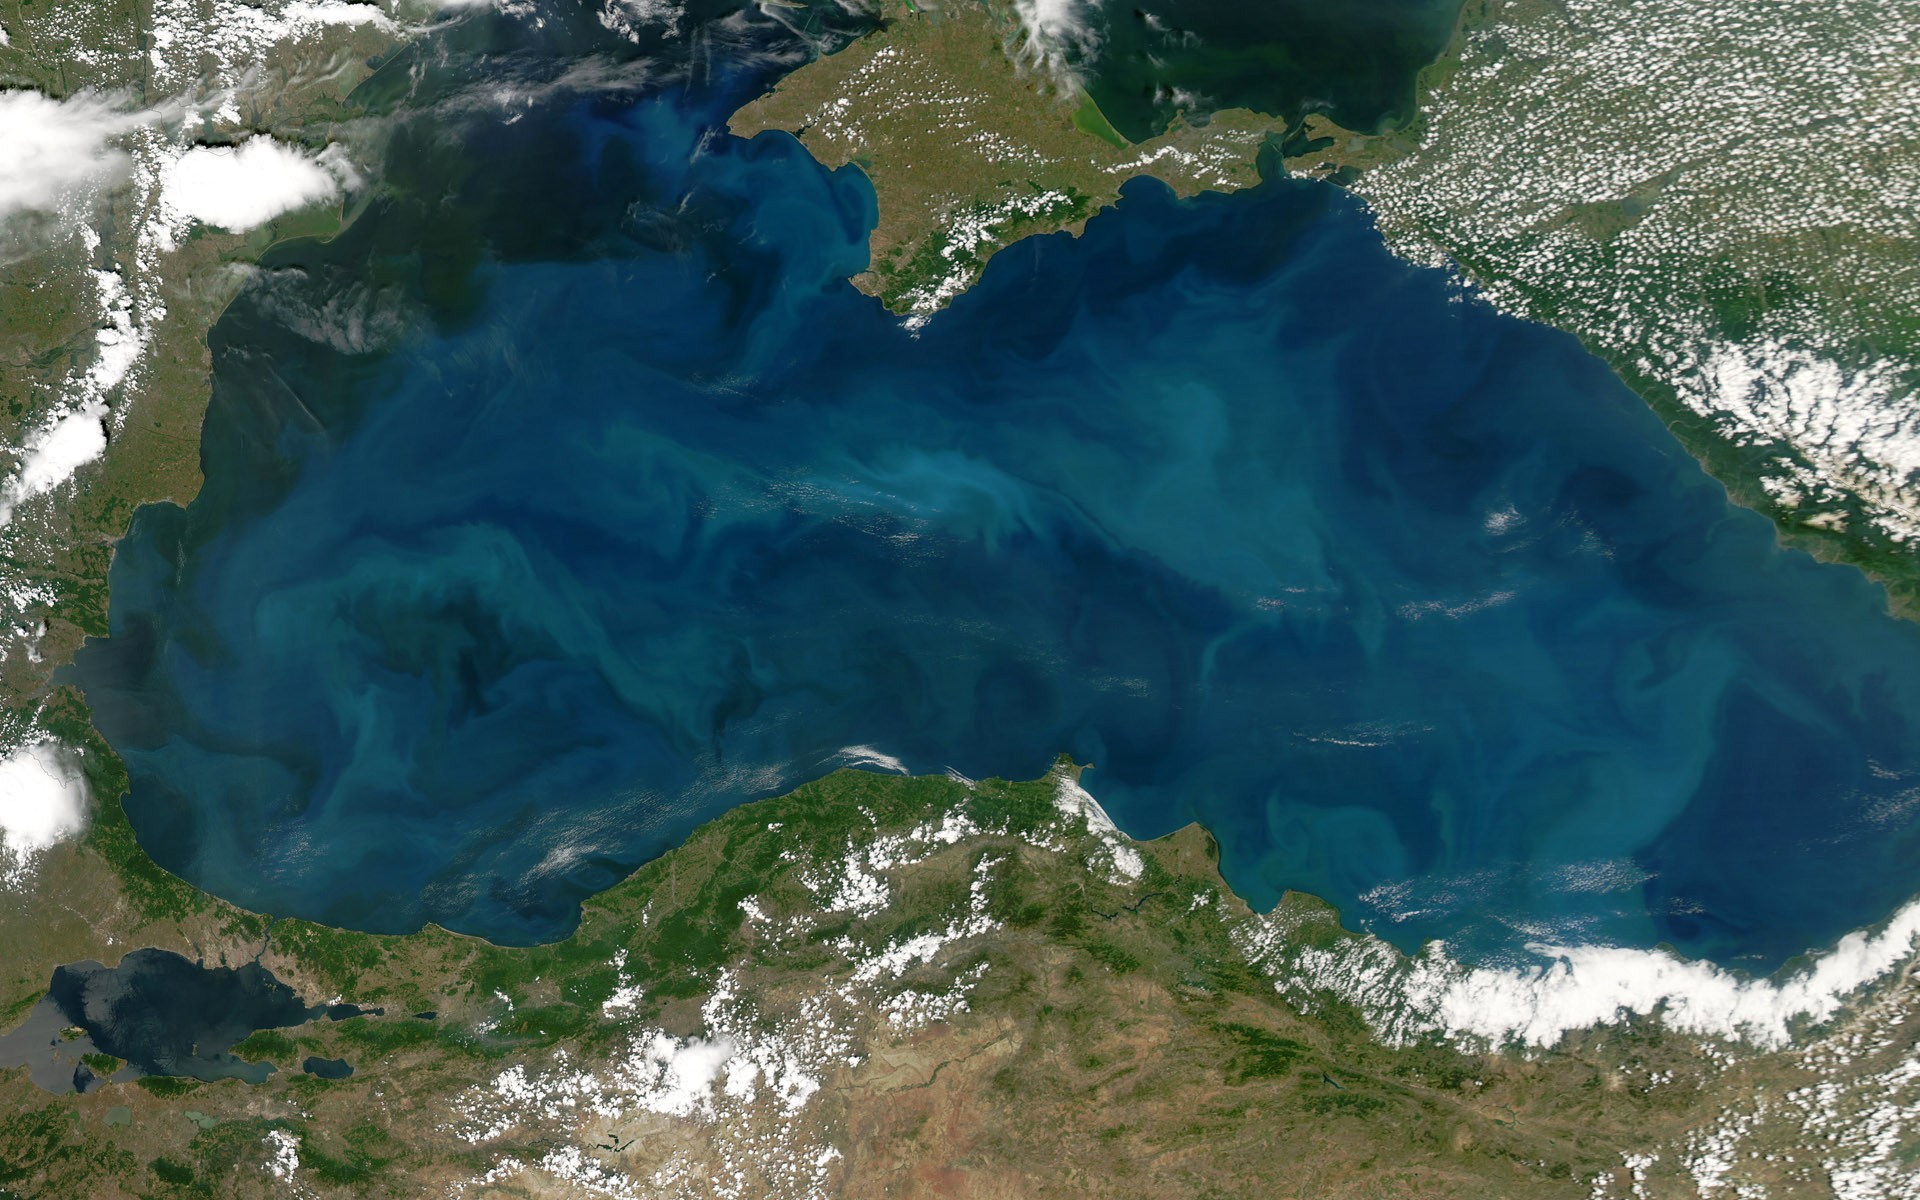 Как выглядит дно черного моря без воды